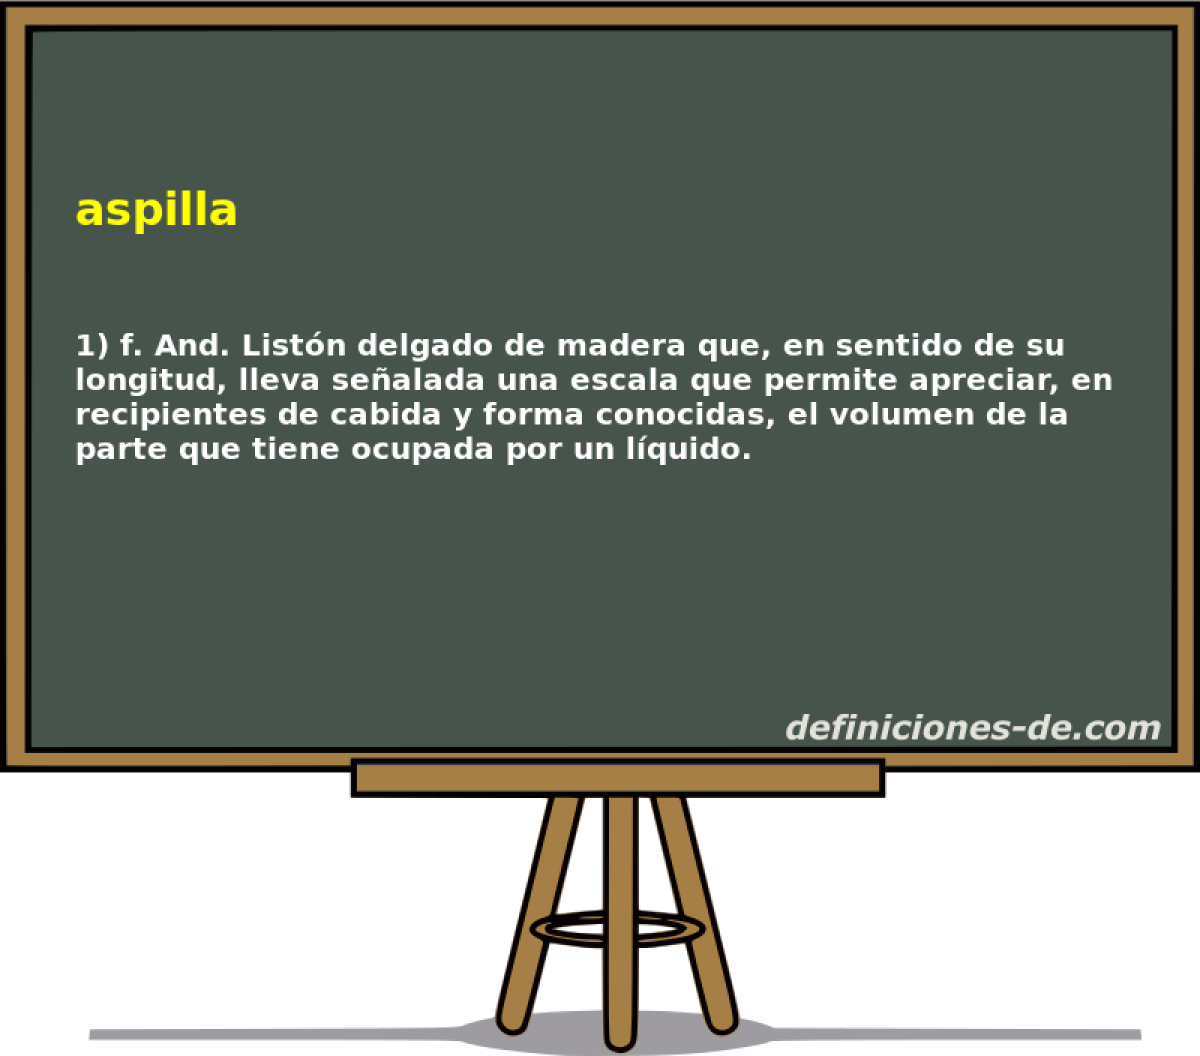 aspilla 